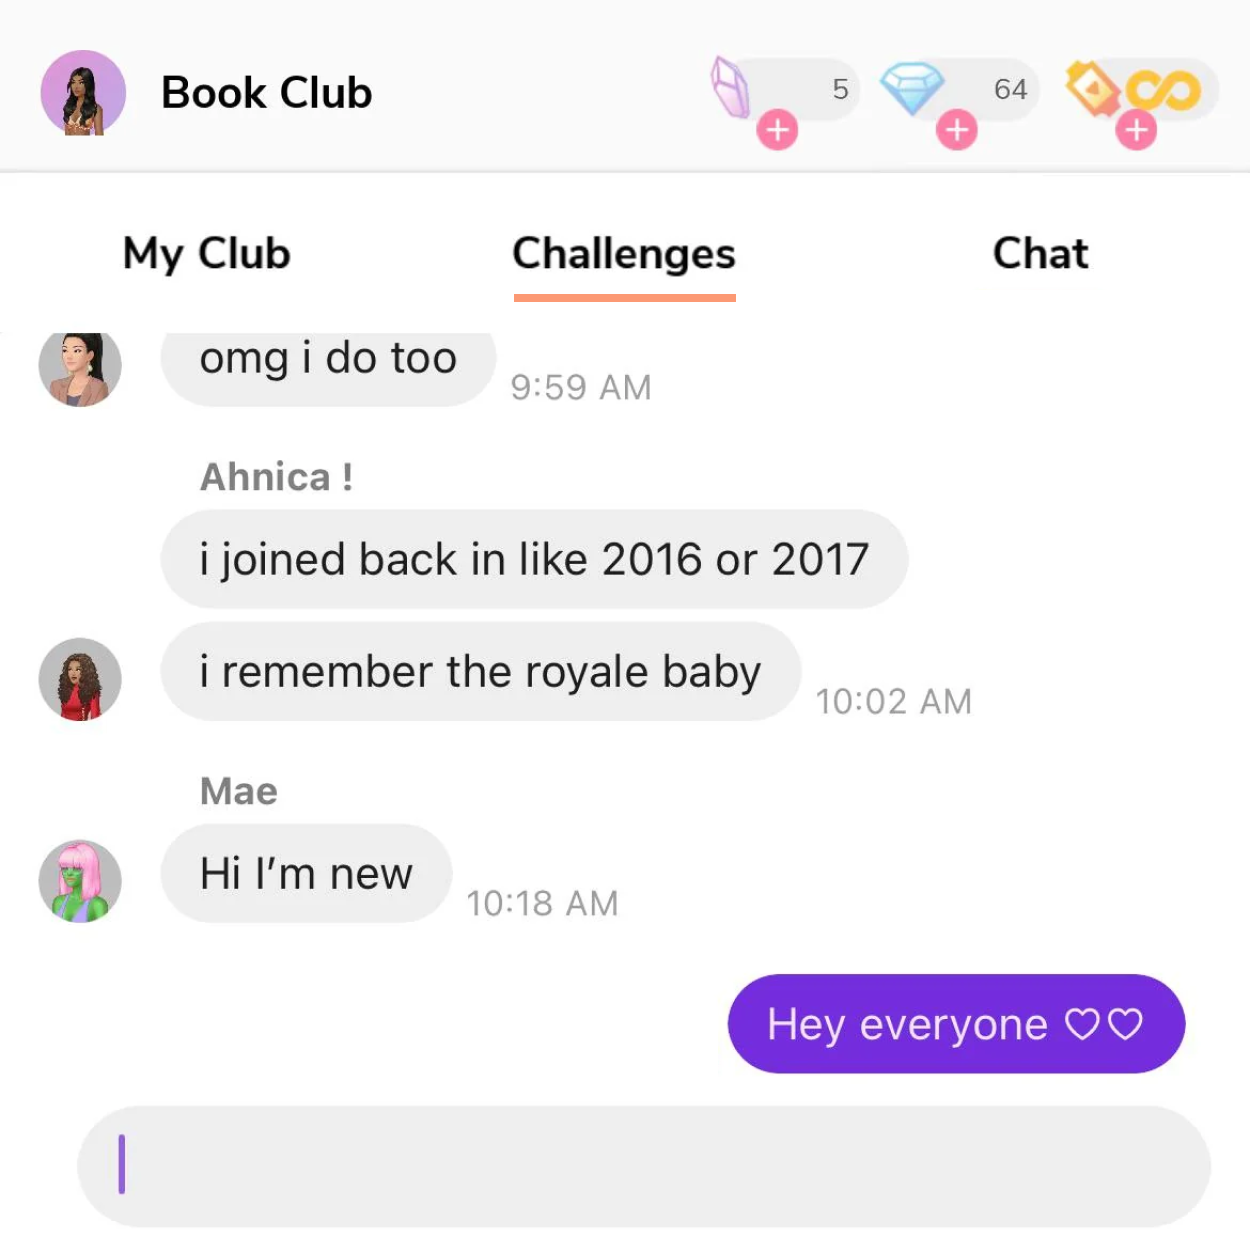 Hobby Club community platform